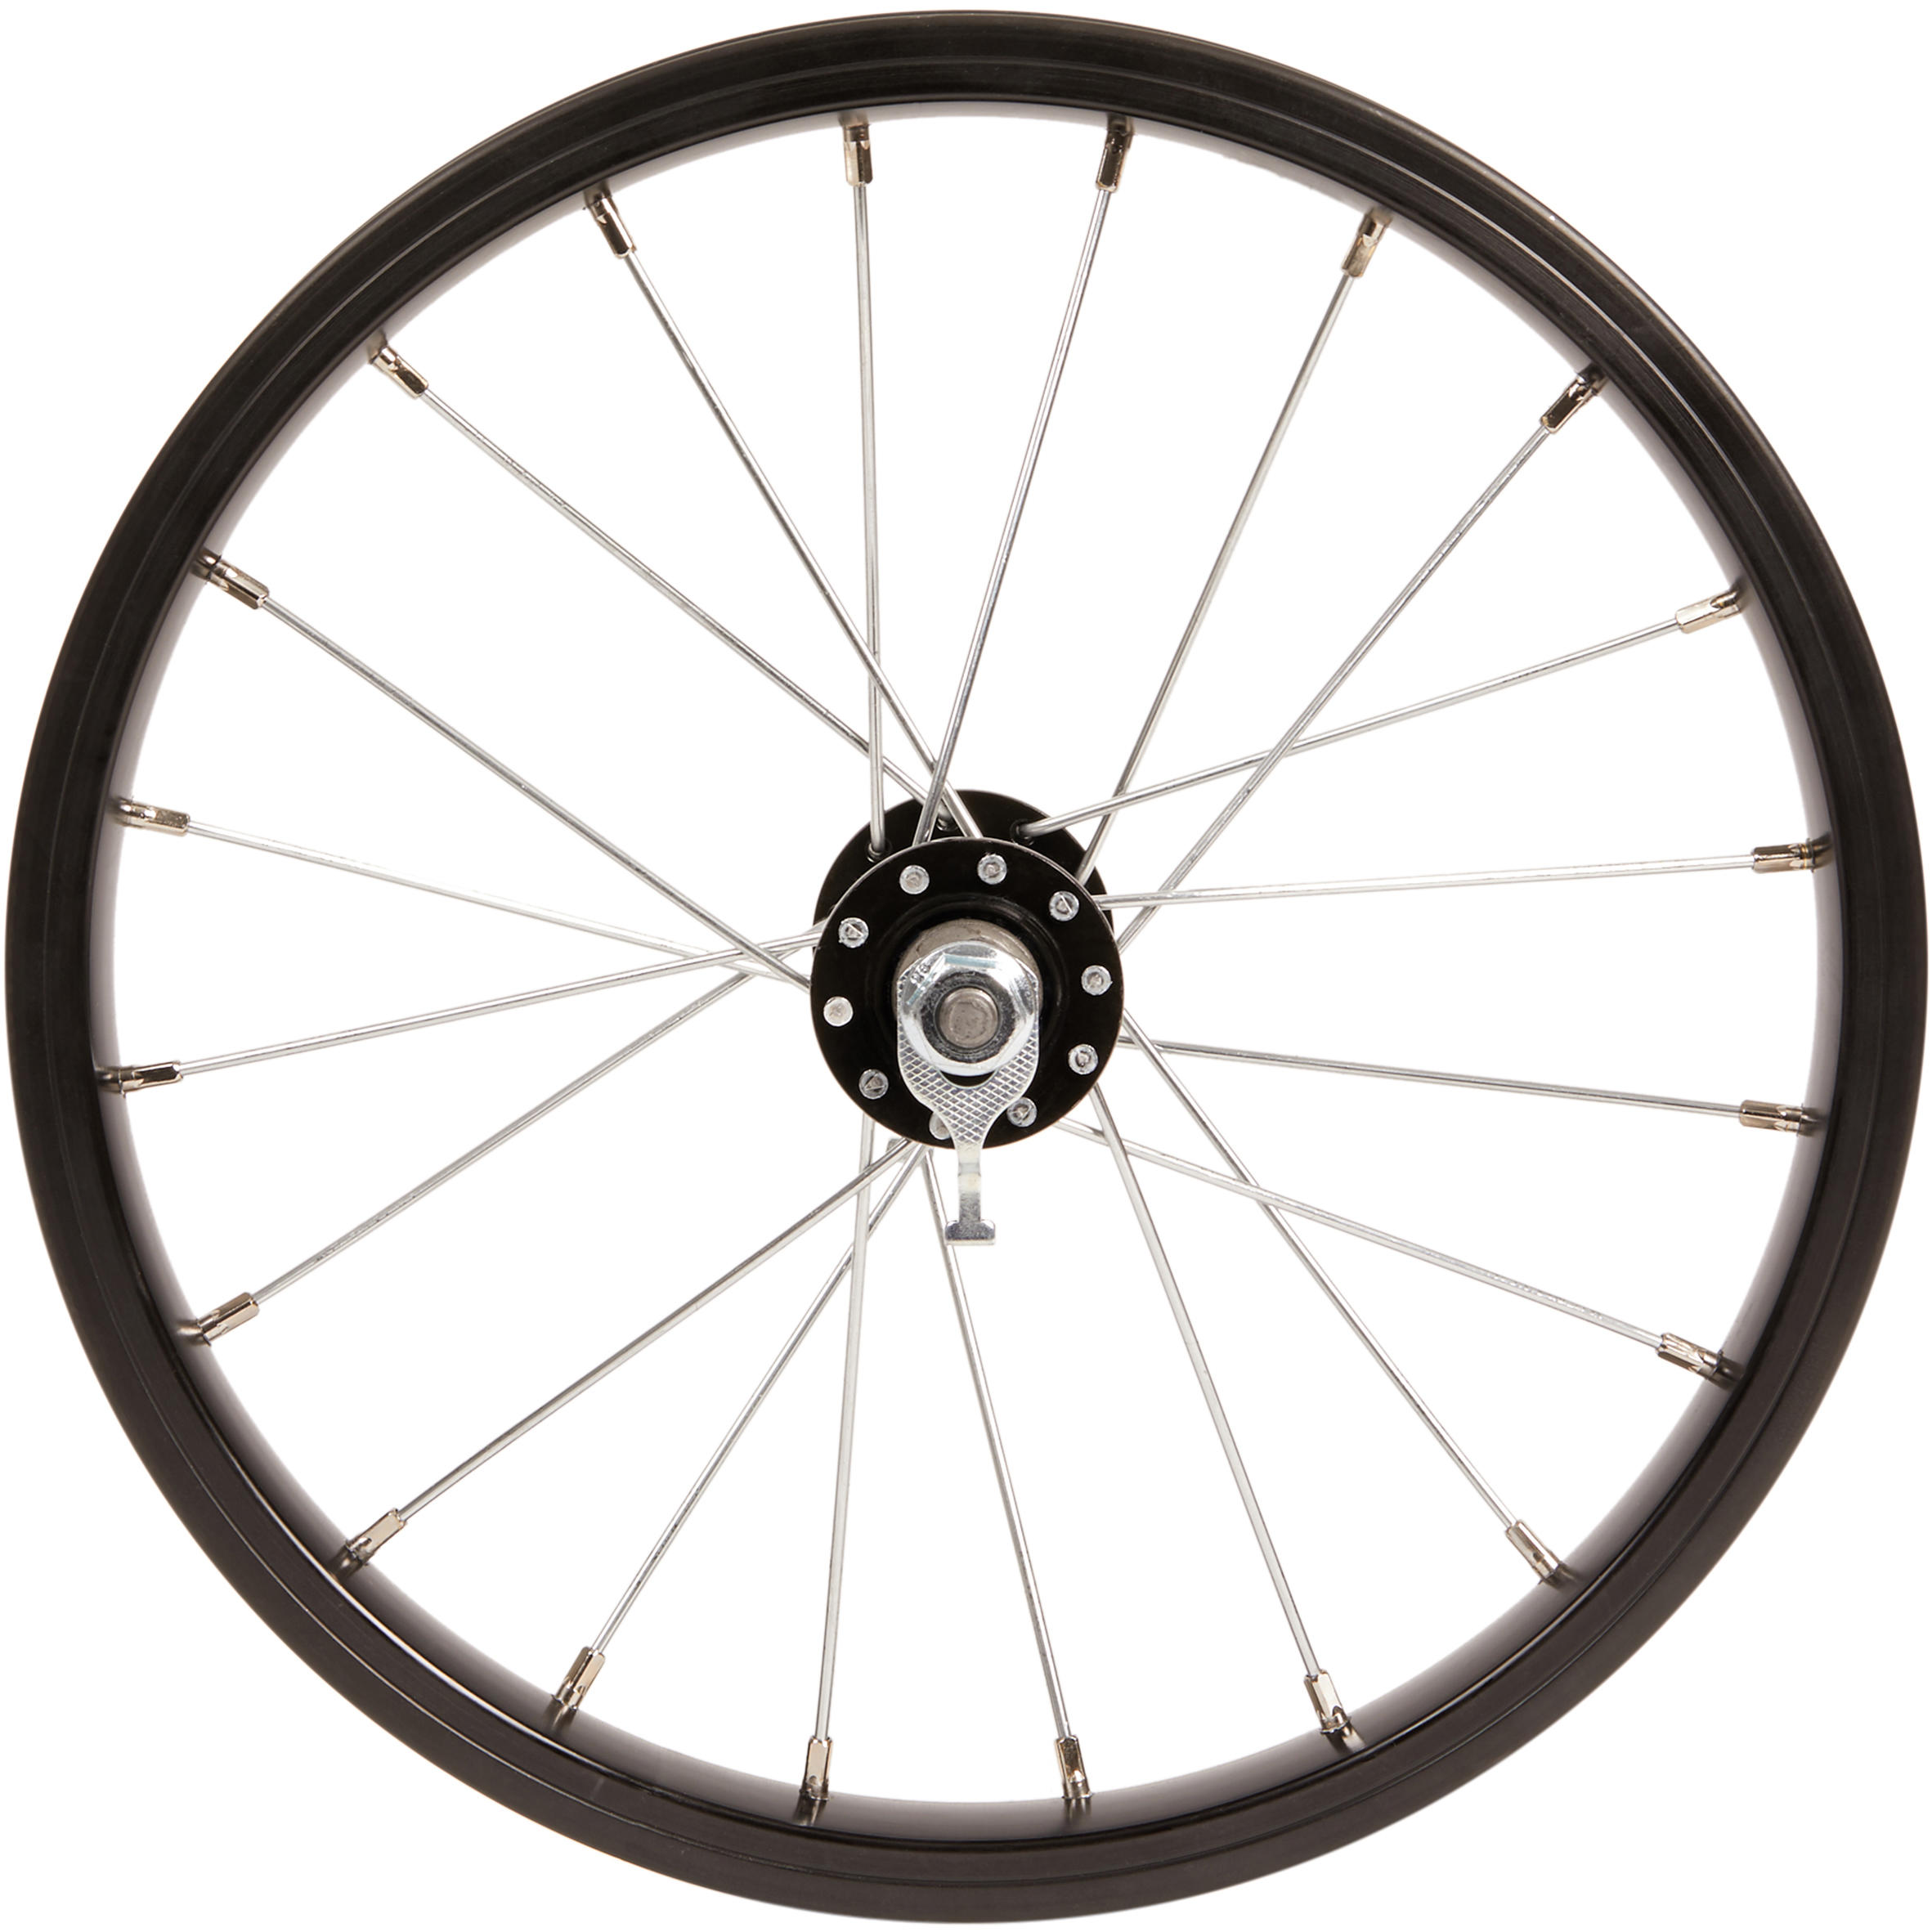 14 bicycle wheels